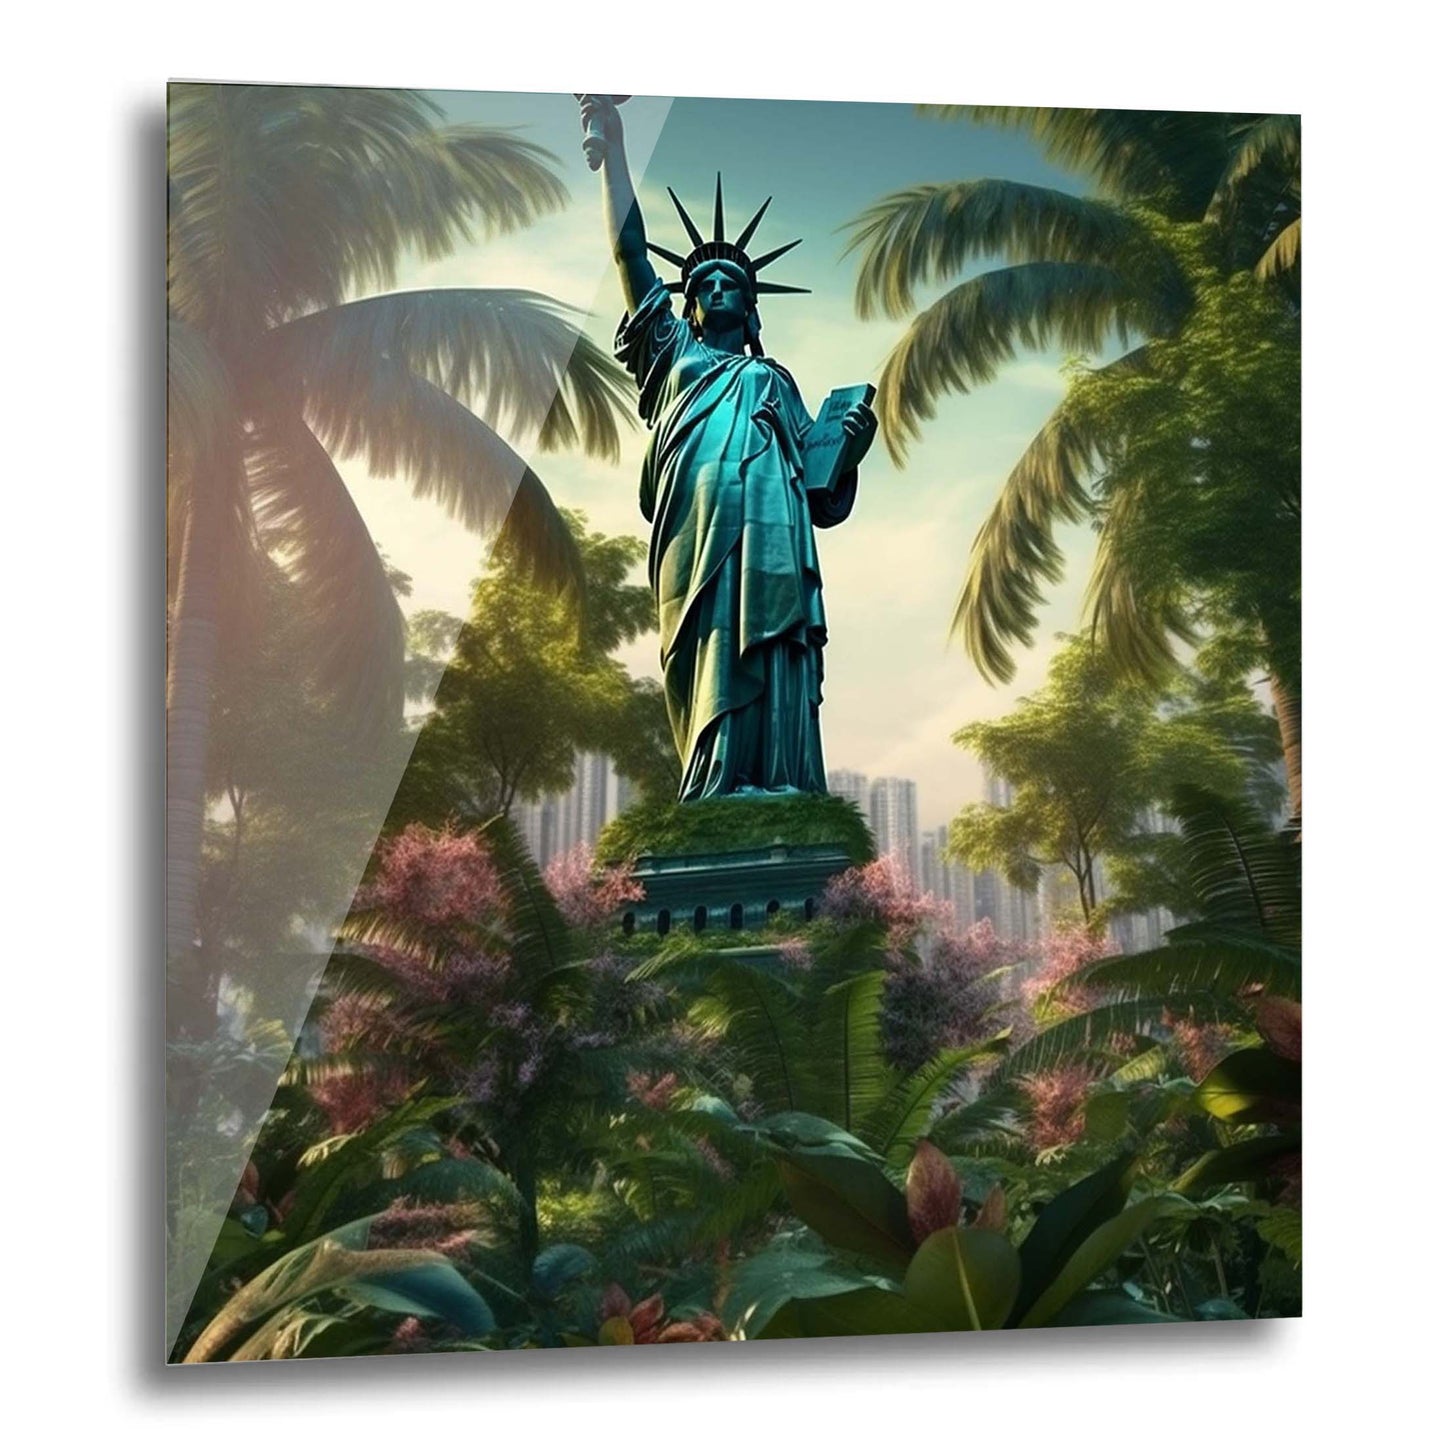 Peinture murale sur le thème de la jungle urbaine de la Statue de la Liberté de New York